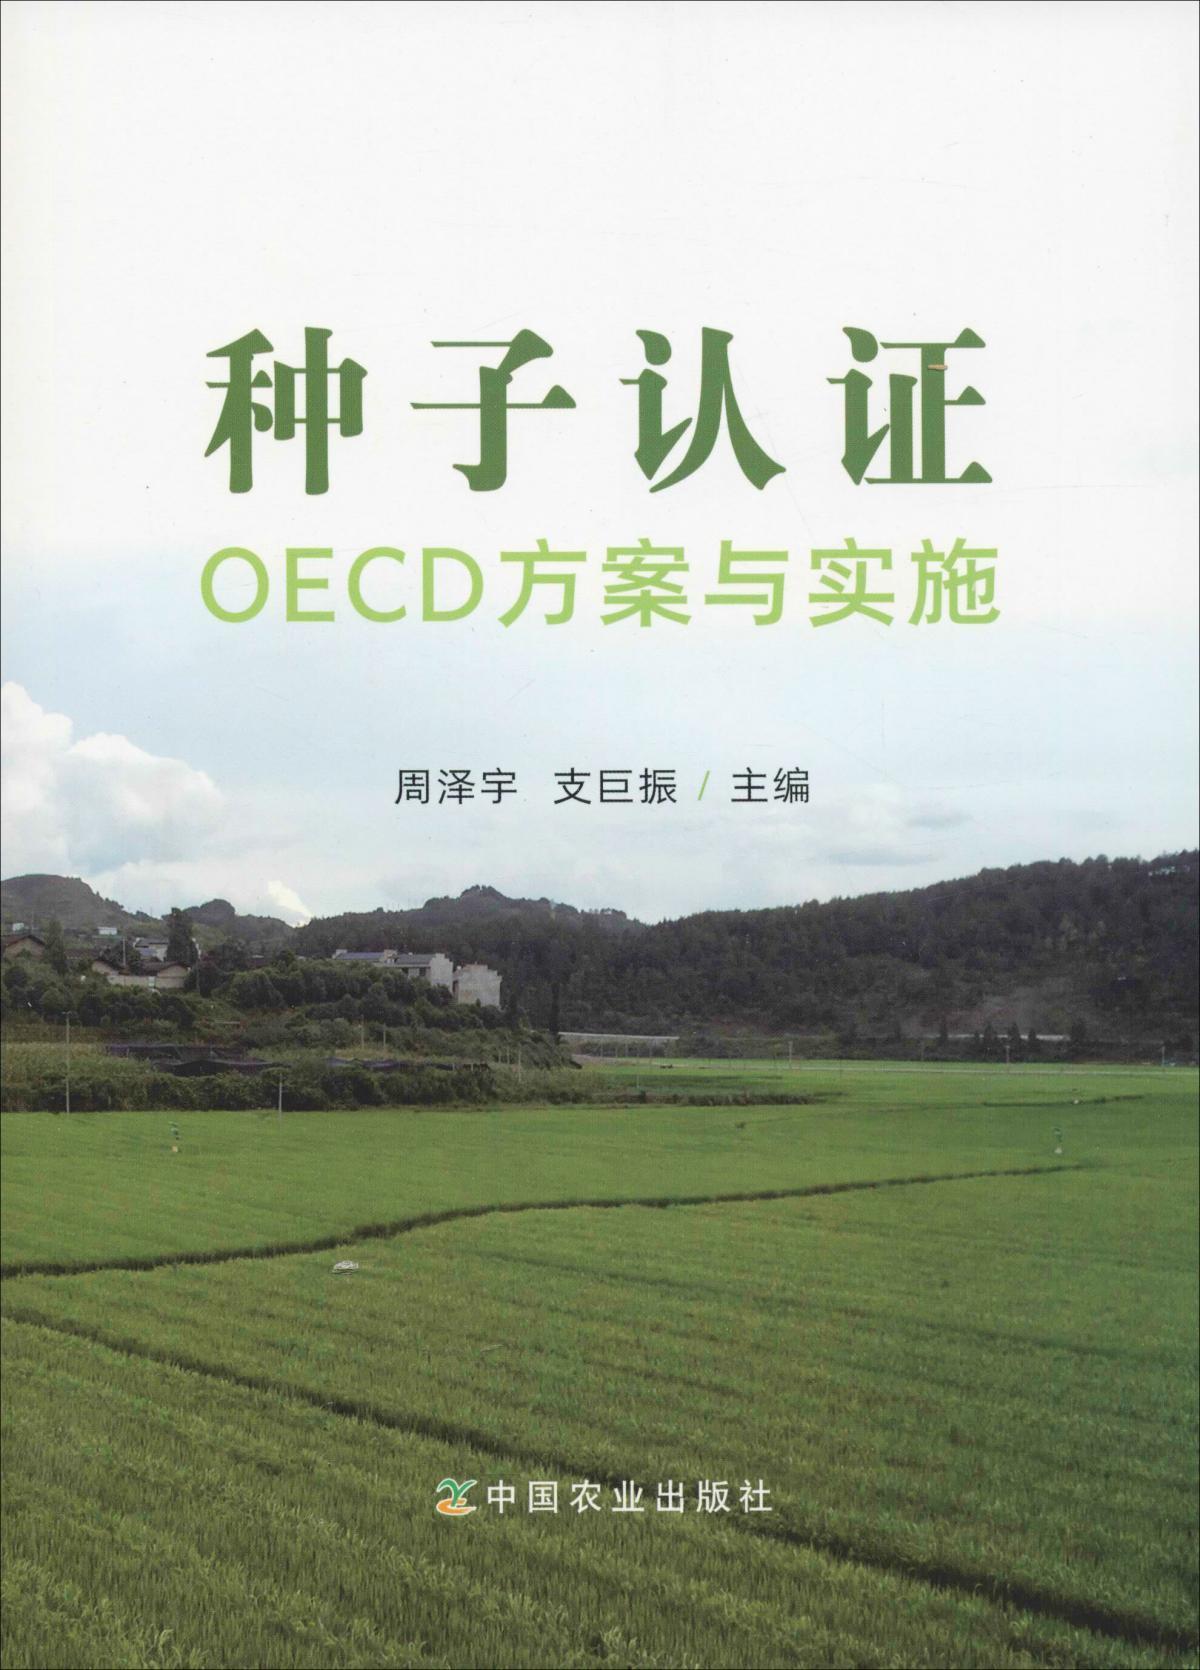 种子认证OECD方案与实施